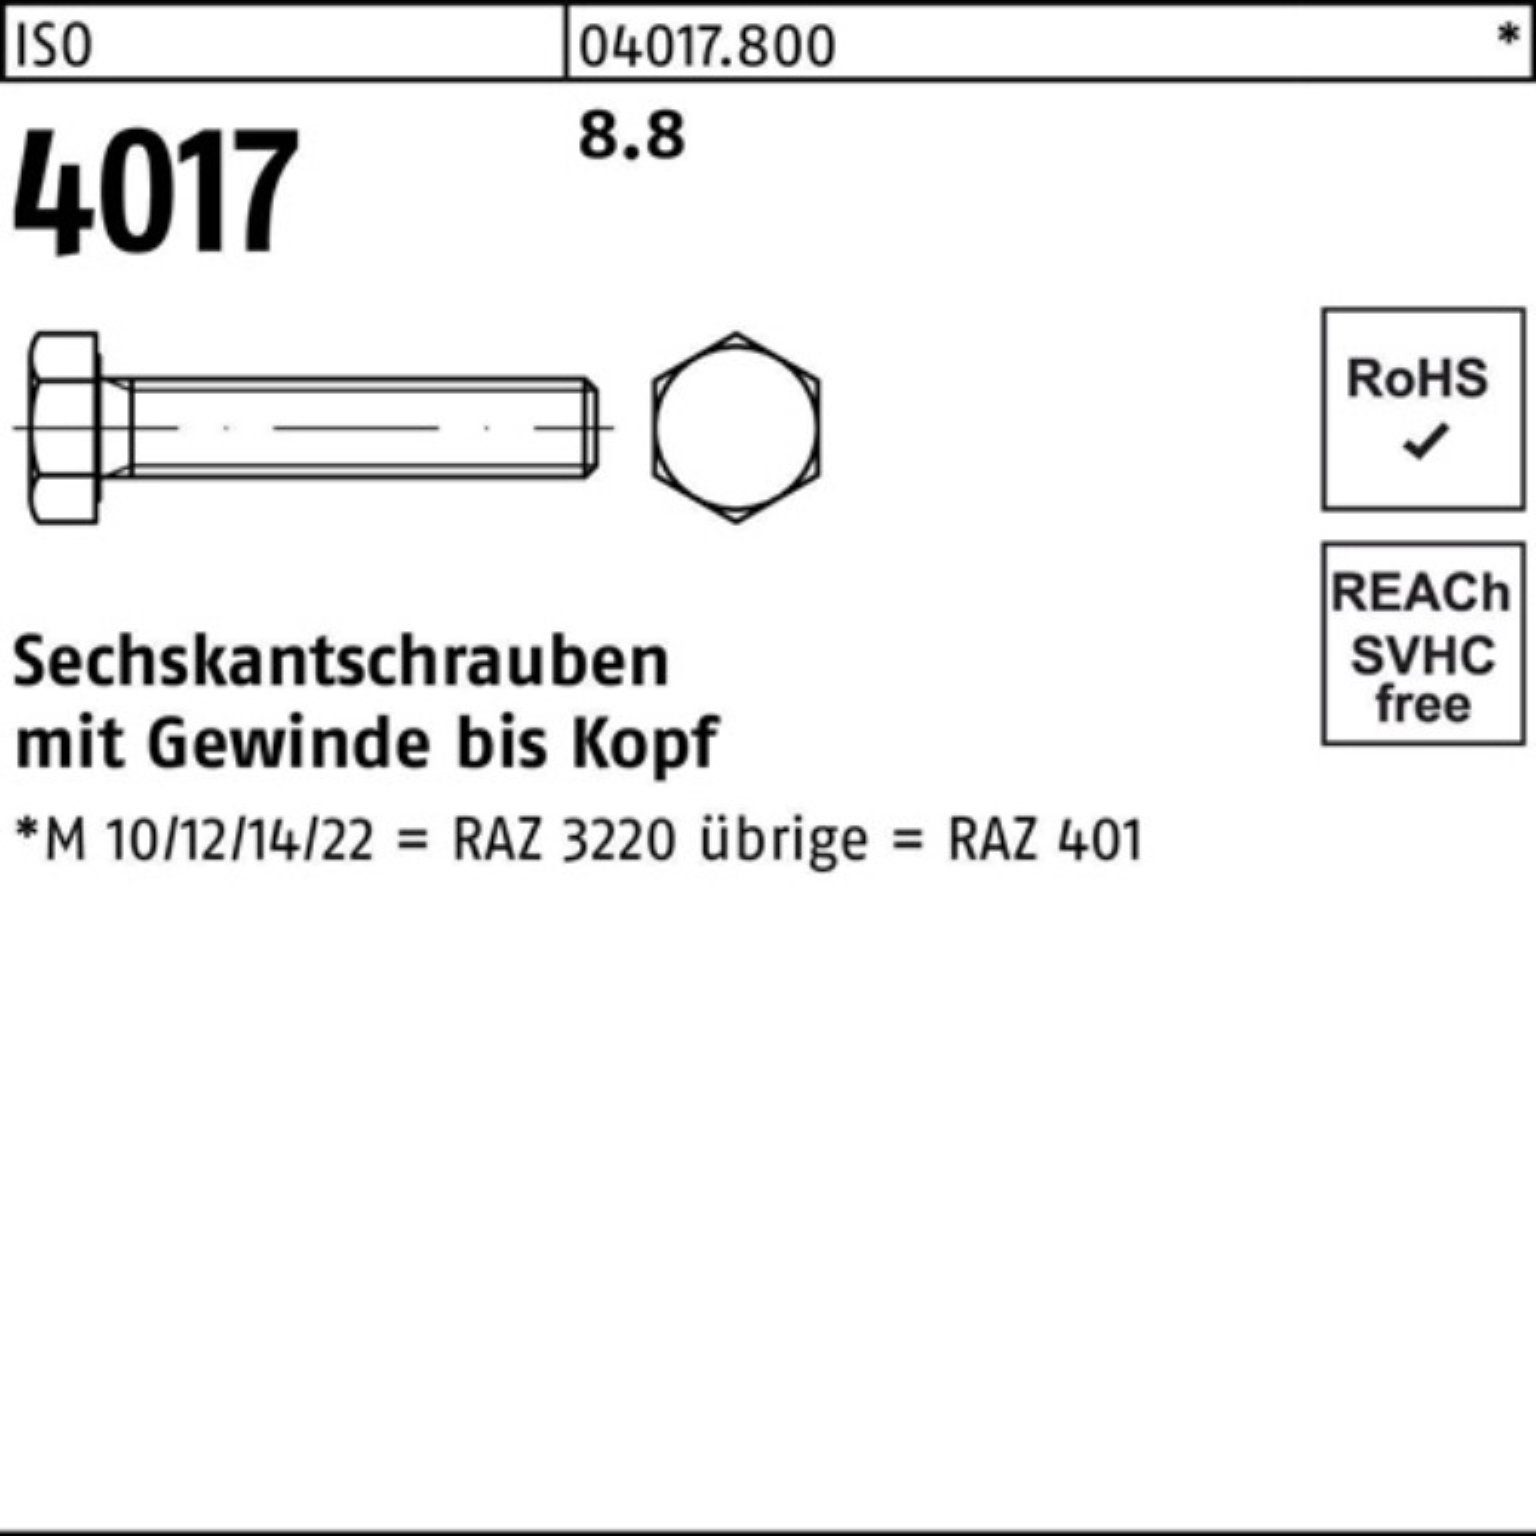 ISO Bufab Stück 120 Sechskantschraube M39x 4017 Sechskantschraube Pack 1 VG ISO 100er 401 8.8